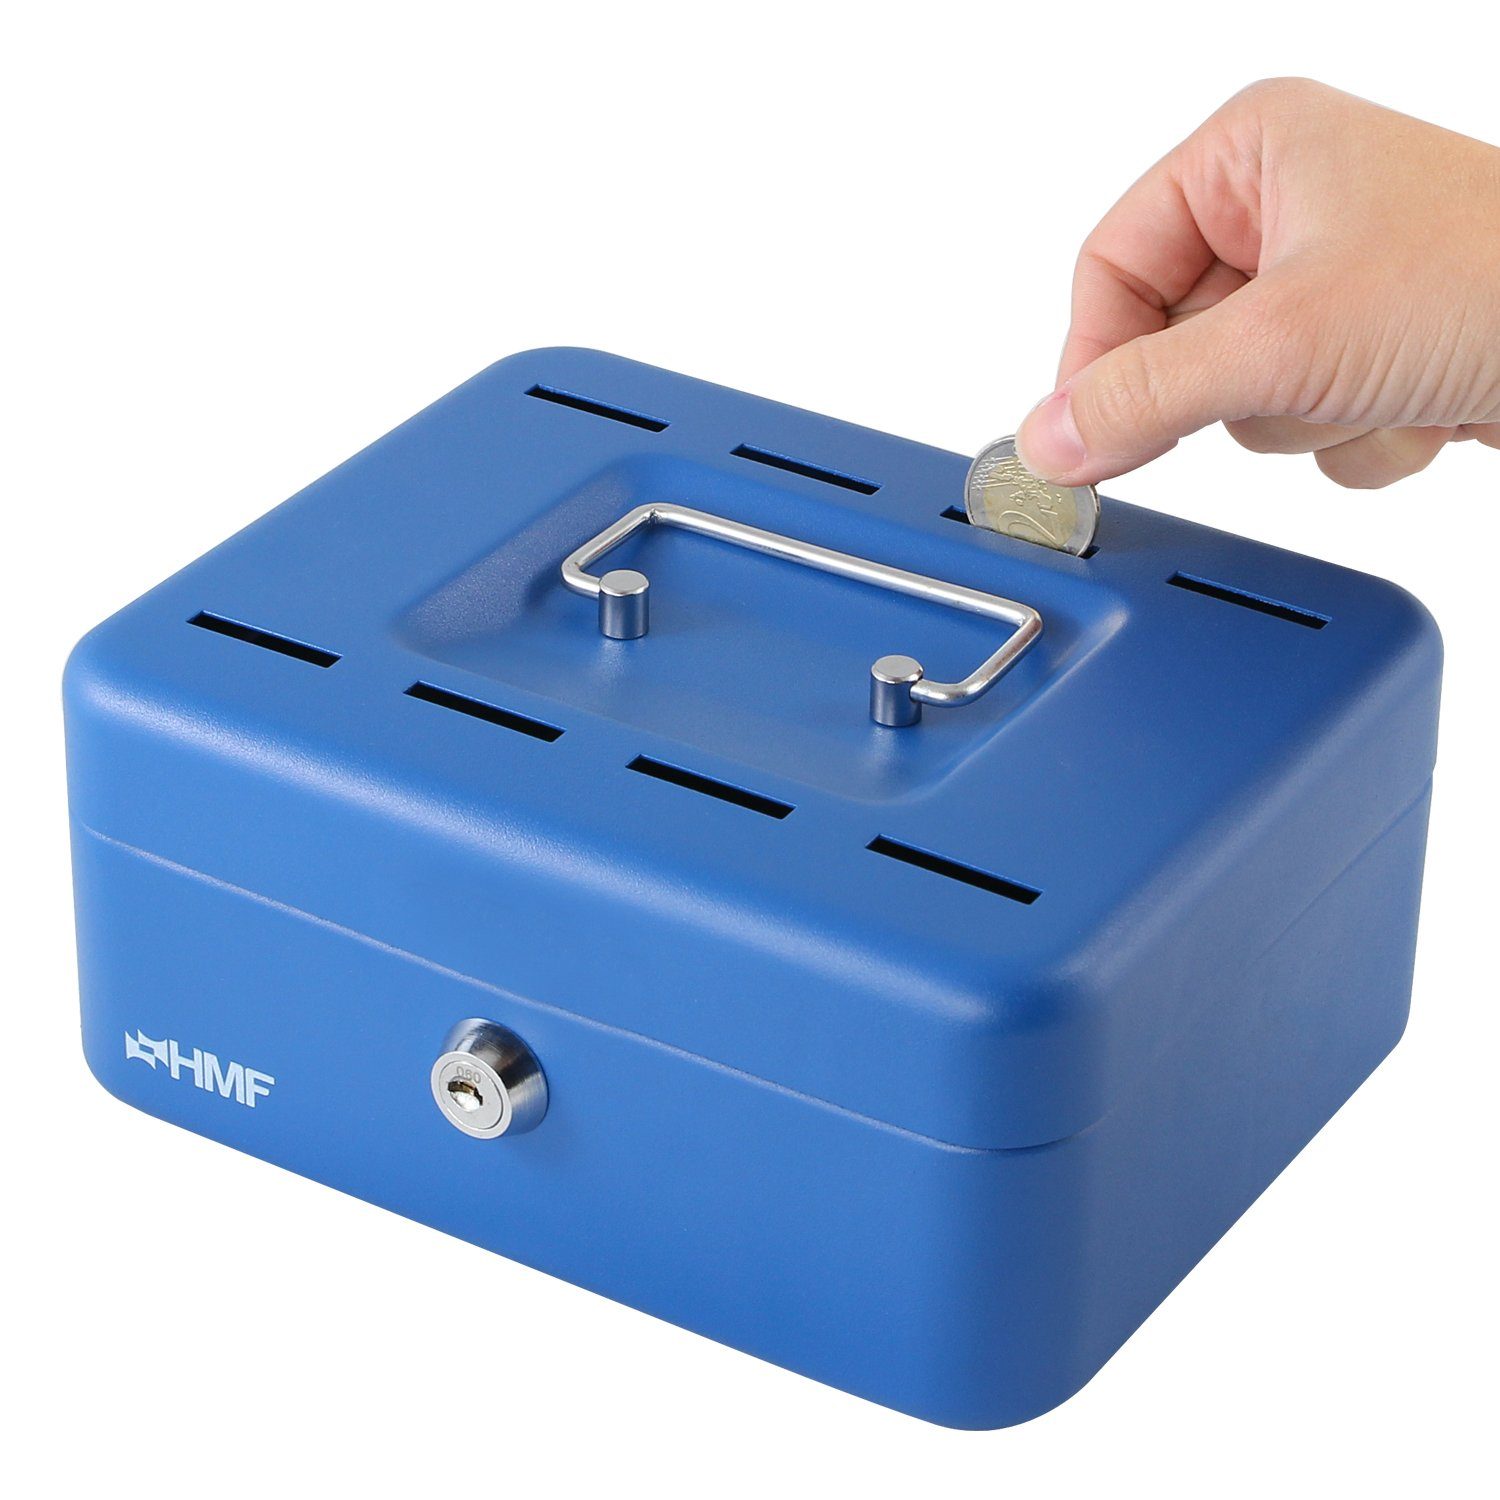 HMF Geldkassette Sparkassette, abschließbare Bargeldkasse mit Einwurfschlitzen, robuste Geldbox mit Schlüssel, 20x16x9 cm blau